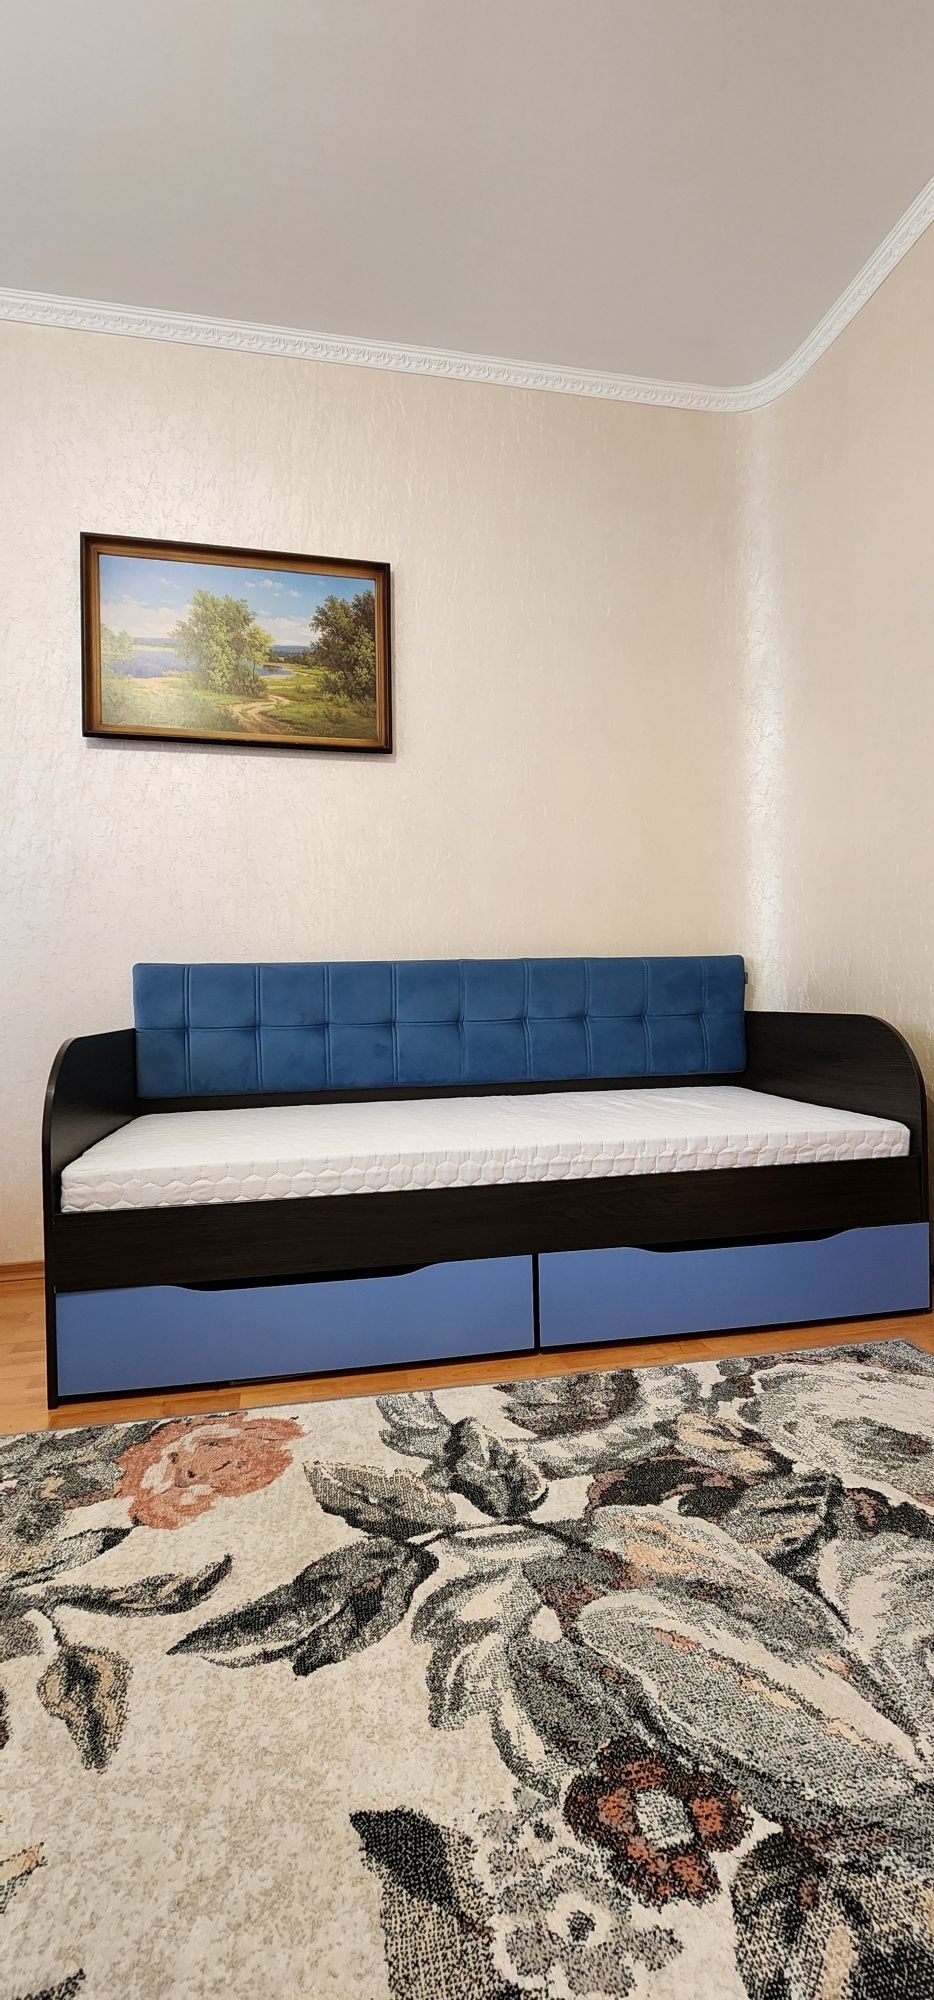 ТЕРМІНОВО ліжко з матрасом 190*80 без торгу ціна мінімальна